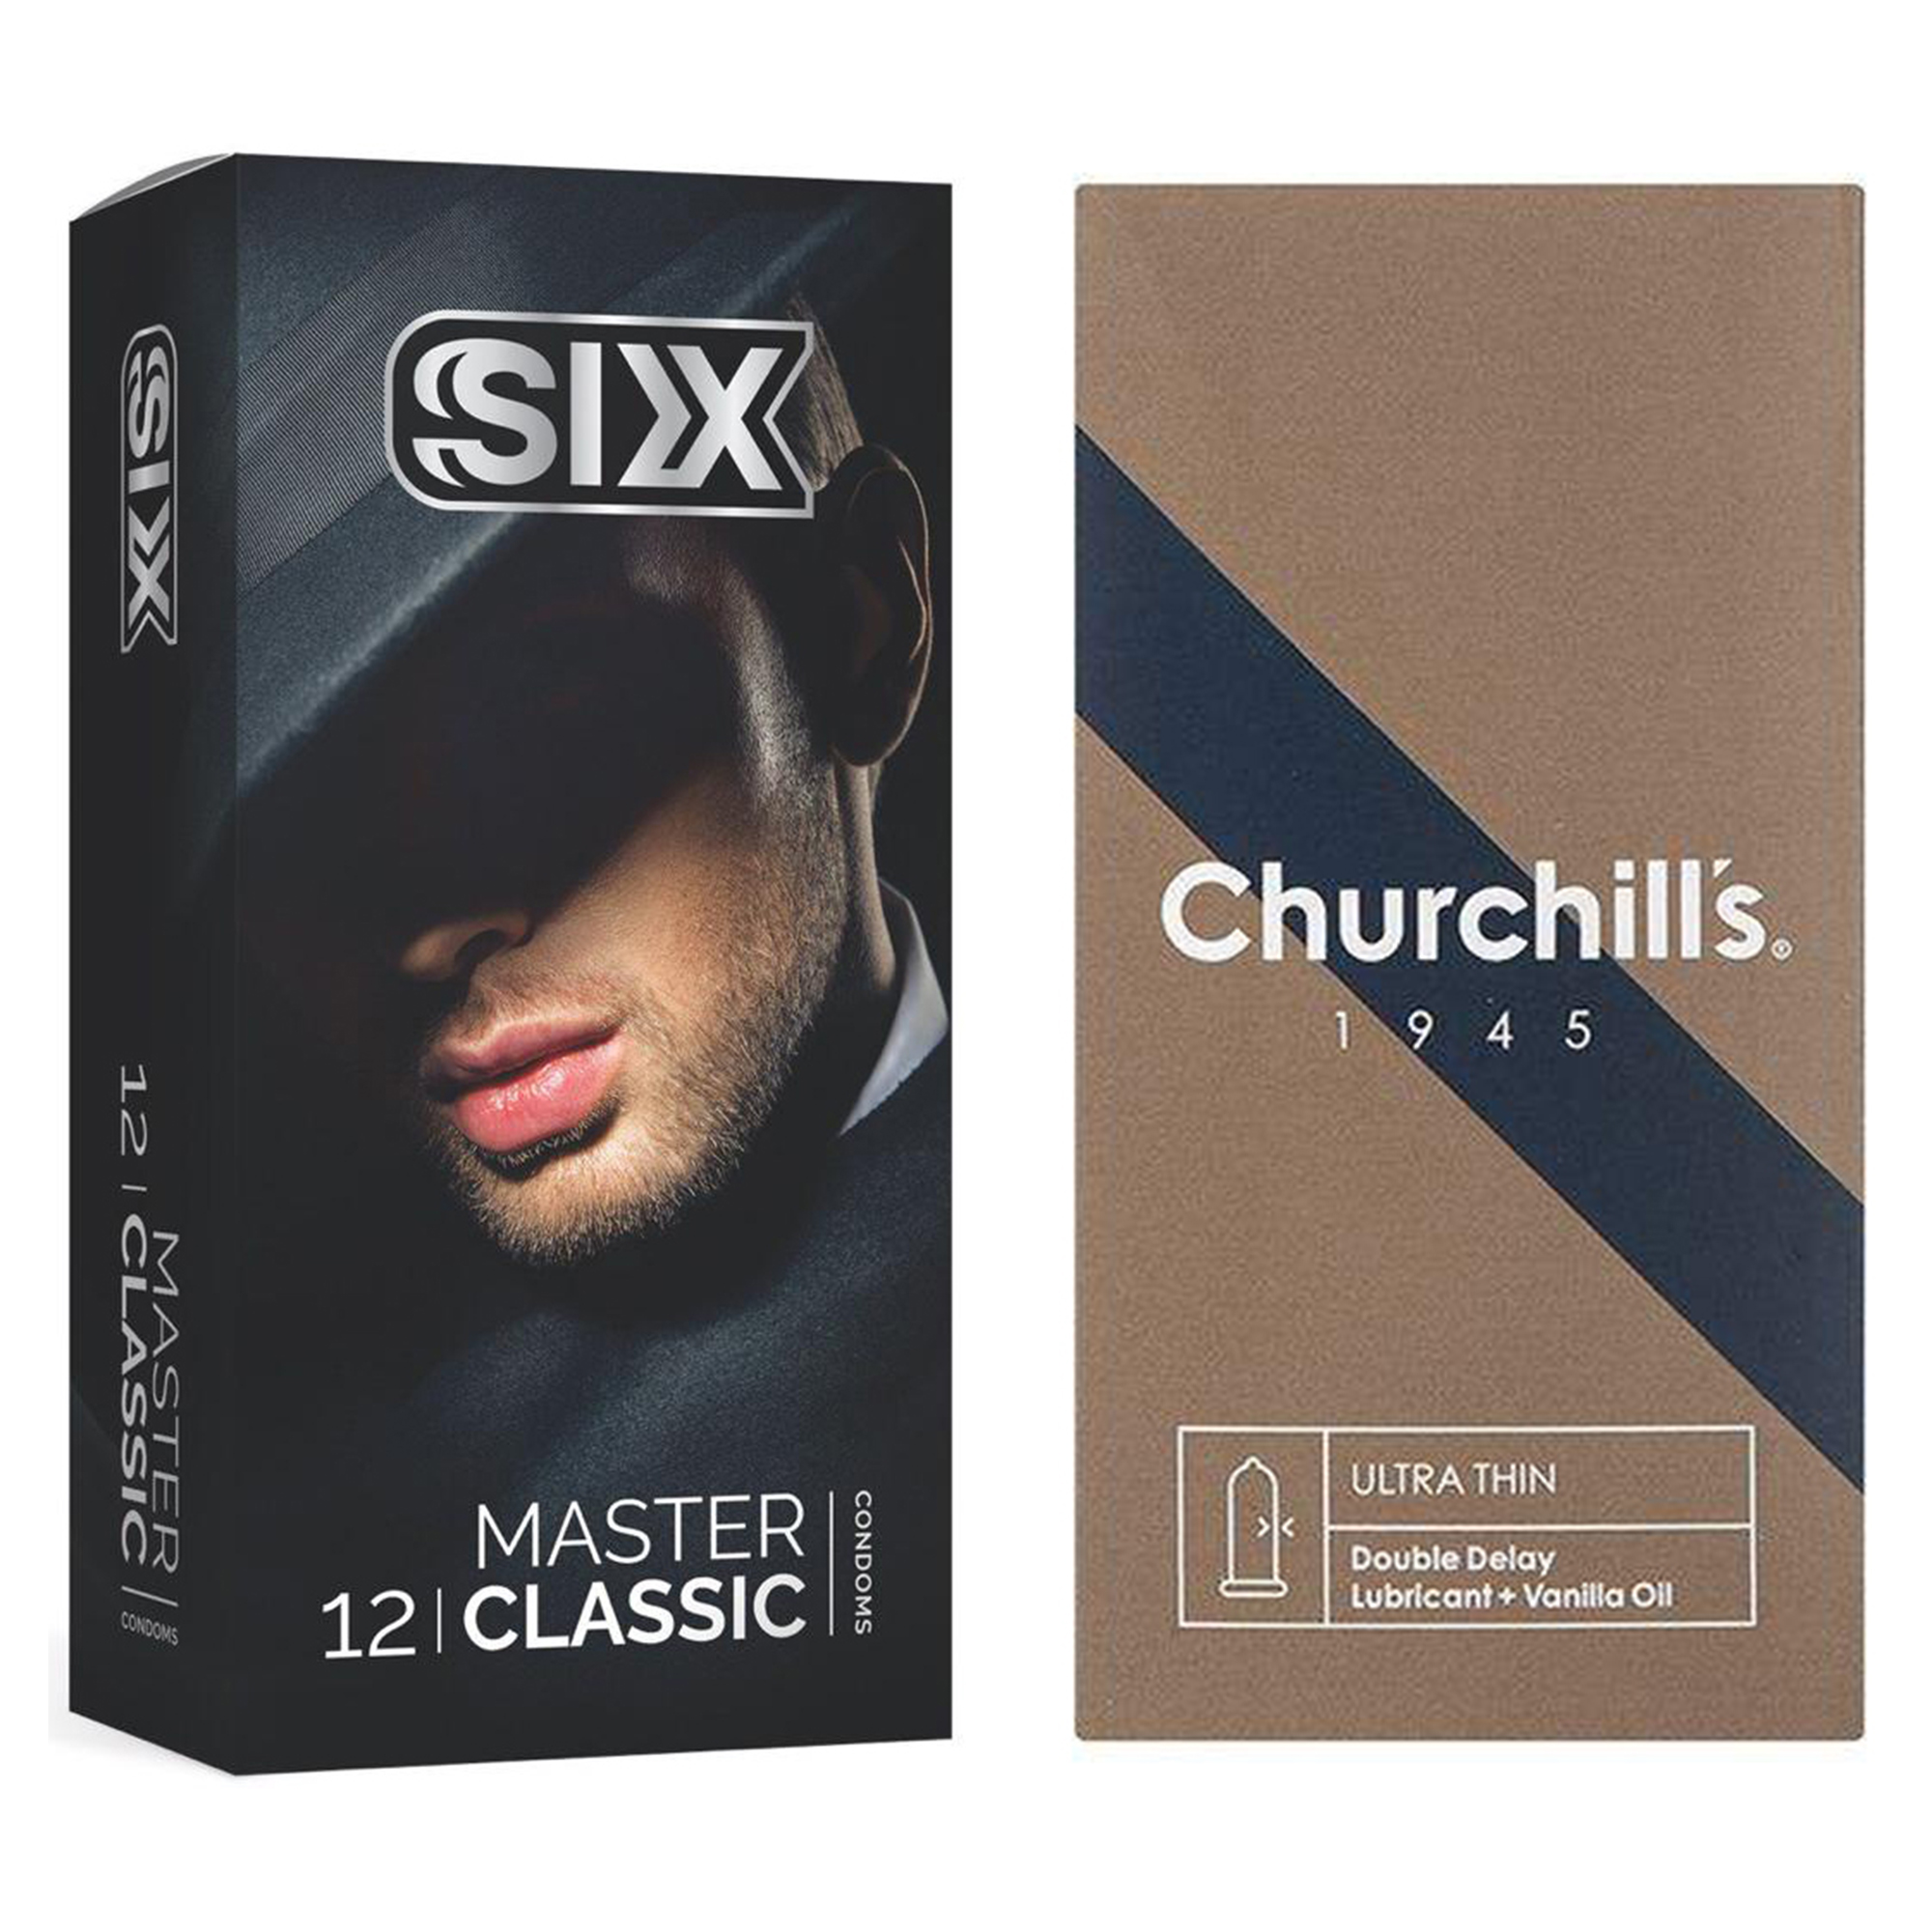 کاندوم چرچیلز مدل Ultra Thin Double Delay بسته 12 عددی به همراه کاندوم سیکس مدل کلاسیک بسته 12 عددی